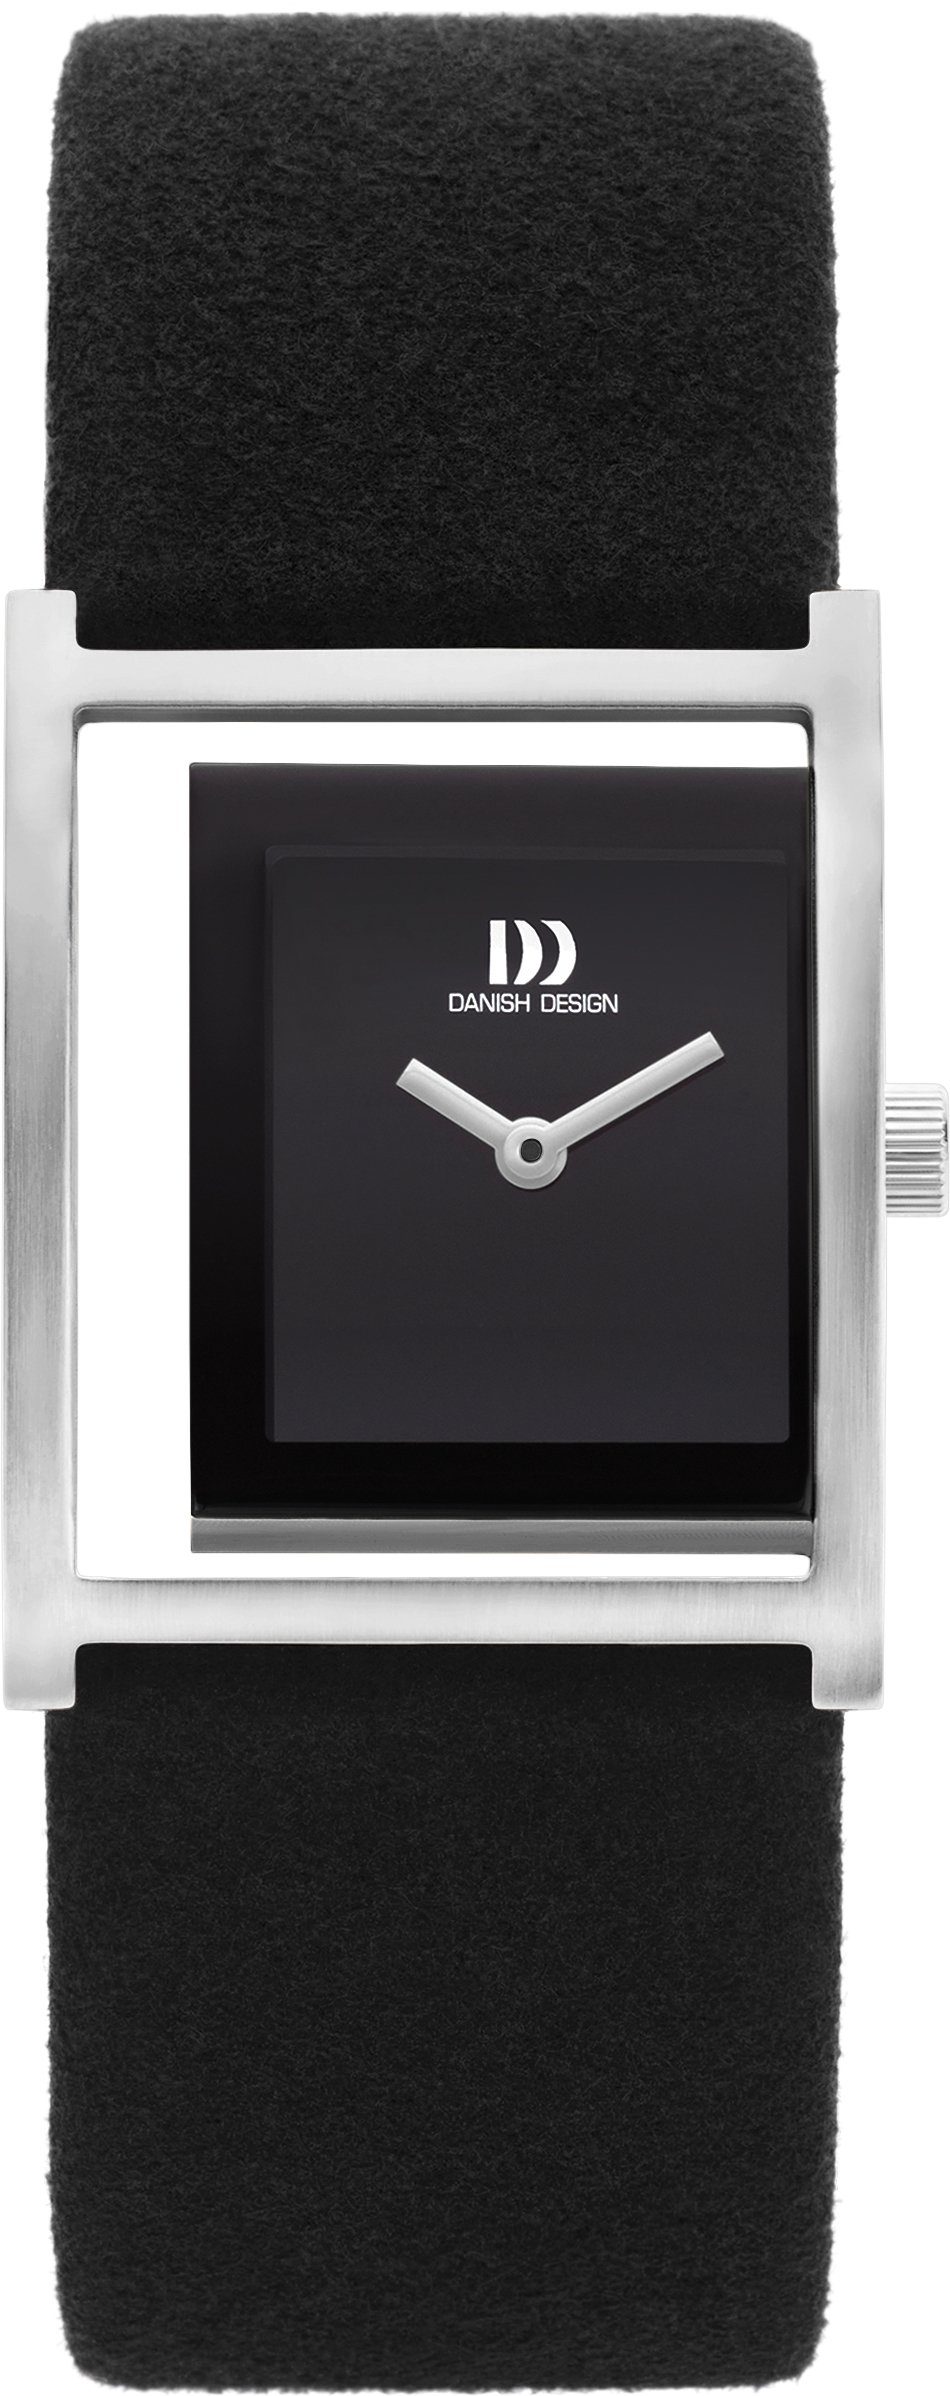 Danish Design Quarzuhr Designuhr schwarz Zifferblatt eckig Dezentrales PICO Microfaser-Uhrarmband